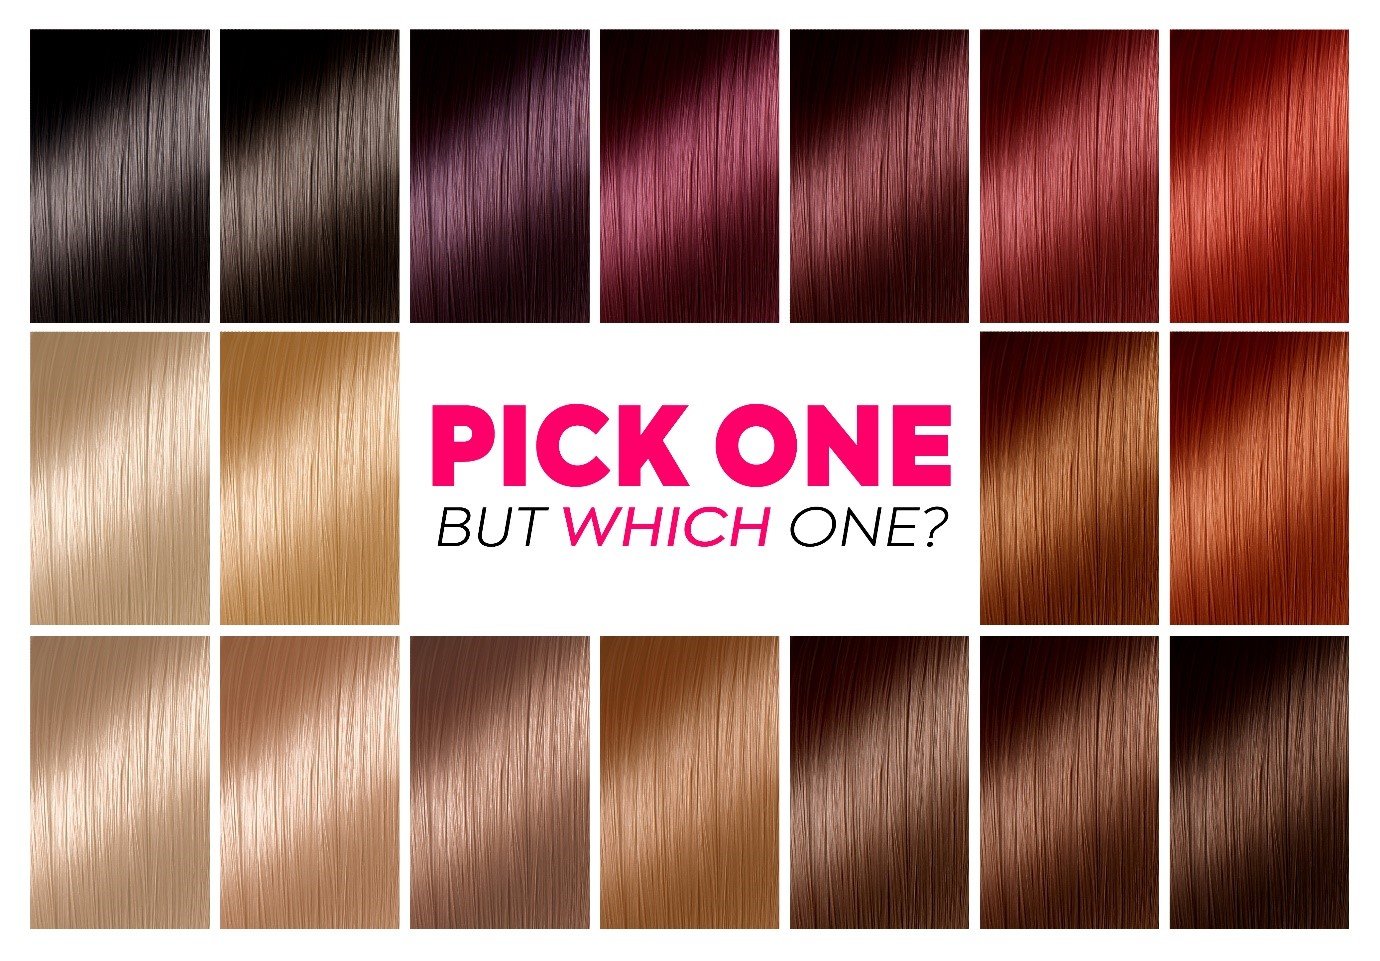 Hair Dye Colour Chart